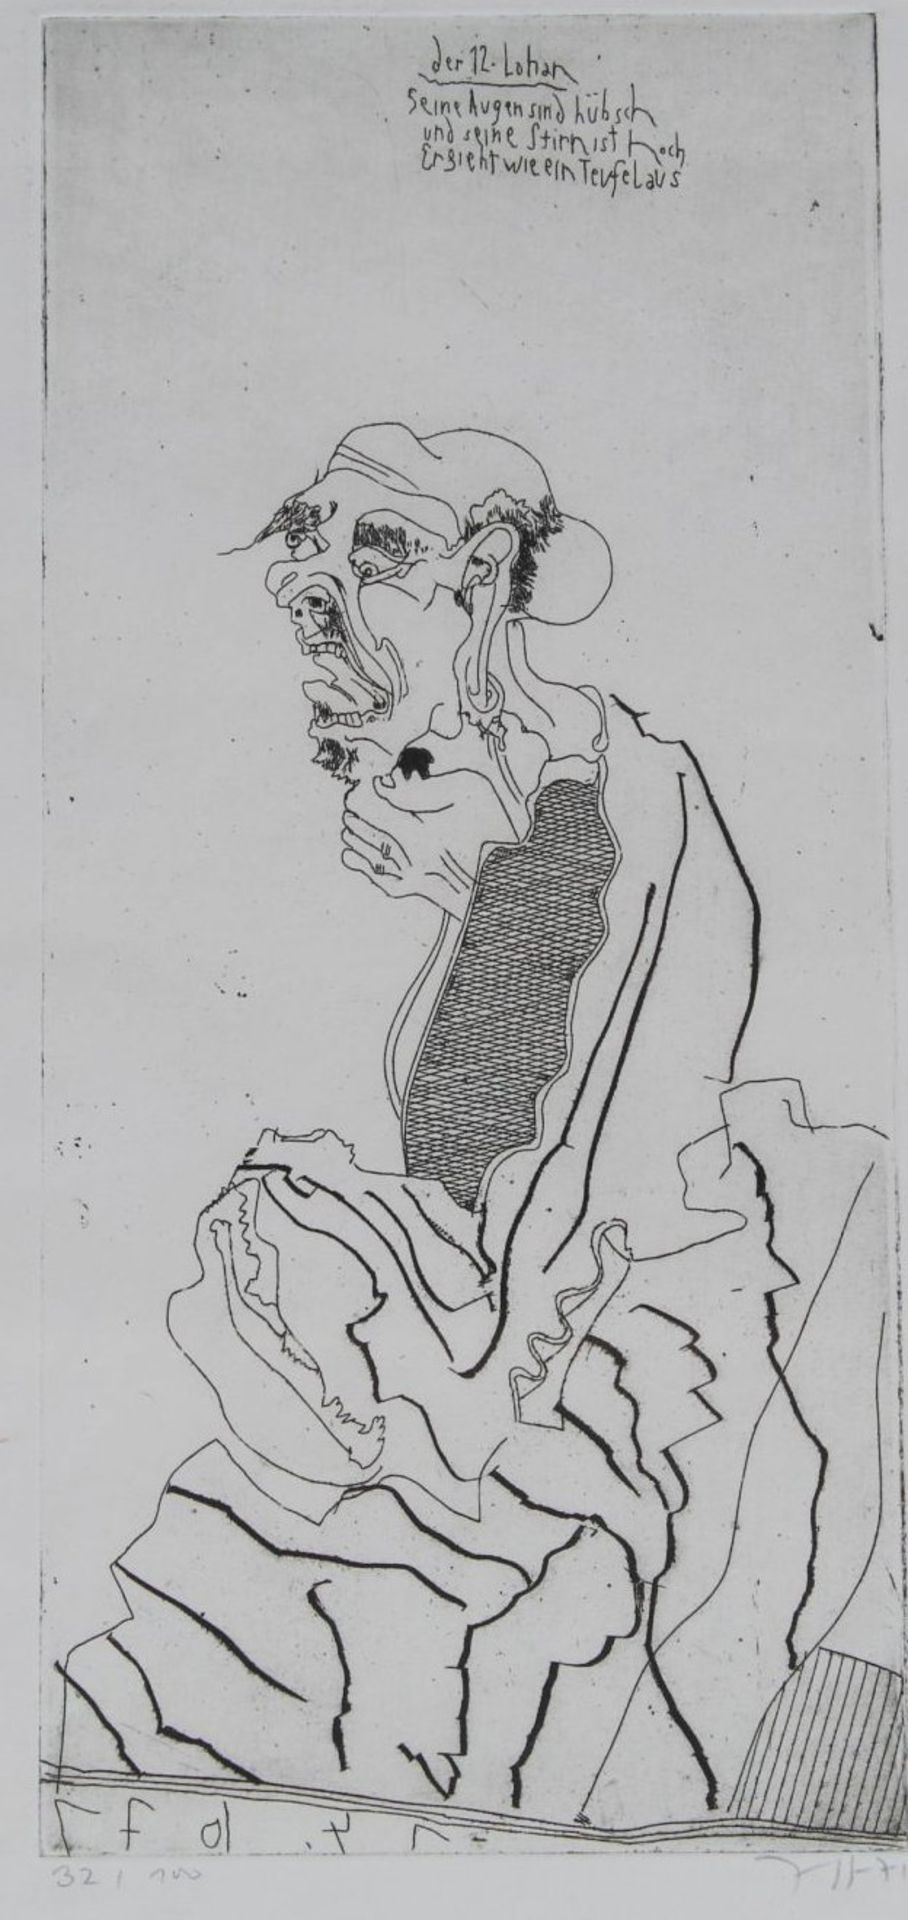 Horst JANSSEN (1929-1995) "Der 12.Lohan", 1971 Radierung, drypoint/Japan, Ed. 32 / 100, 26,6 x 13,